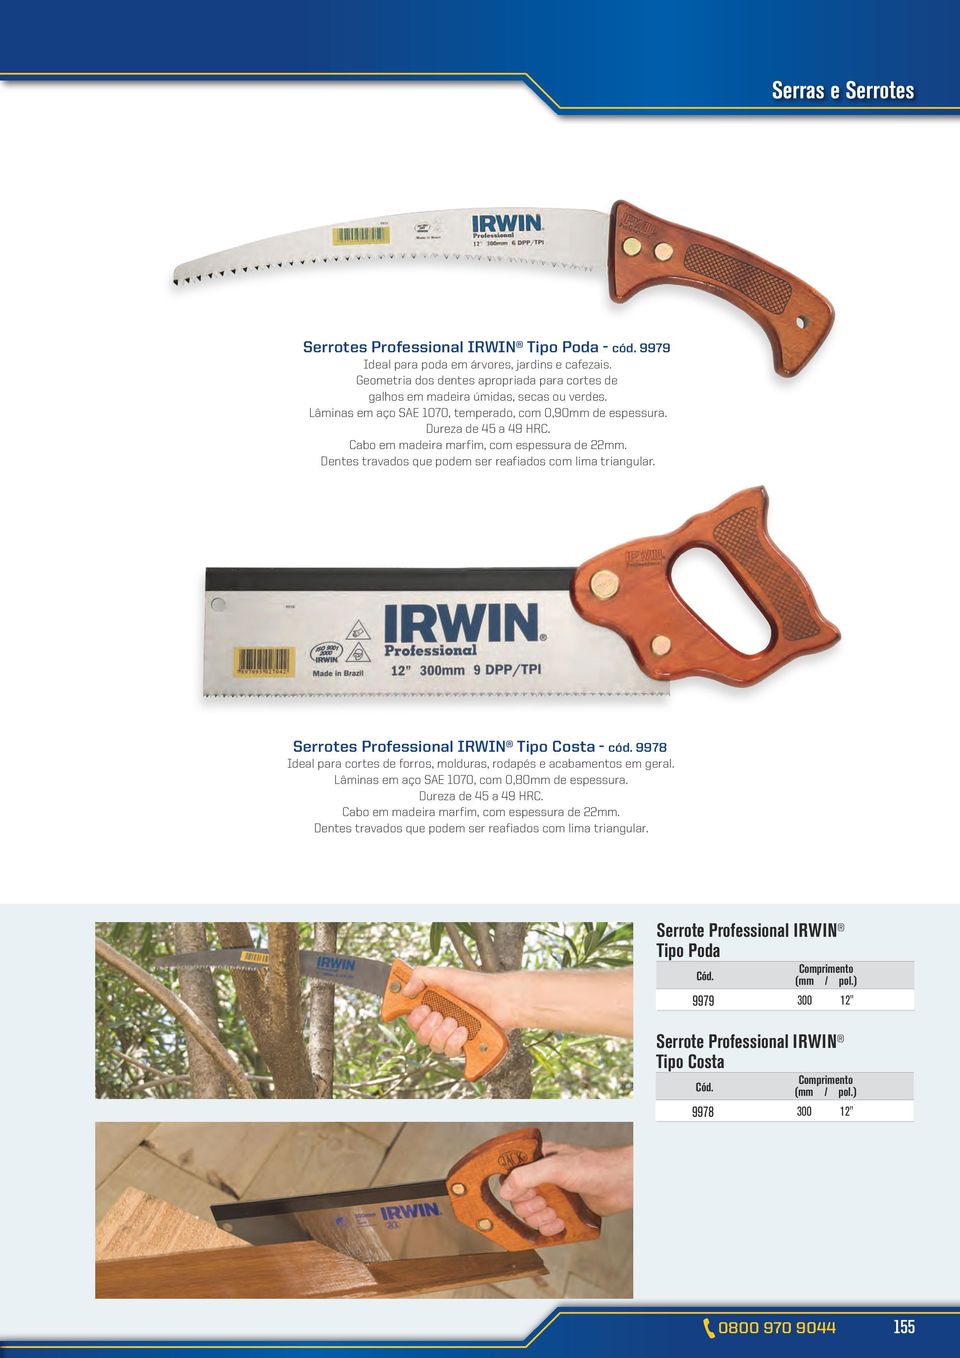 Professional IRWIN Tipo Costa - cód. 9978 Ideal para cortes de forros, molduras, rodapés e acabamentos em geral. Lâminas em aço SAE 1070, com 0,80mm de espessura. Dureza de 45 a 49 HRC.